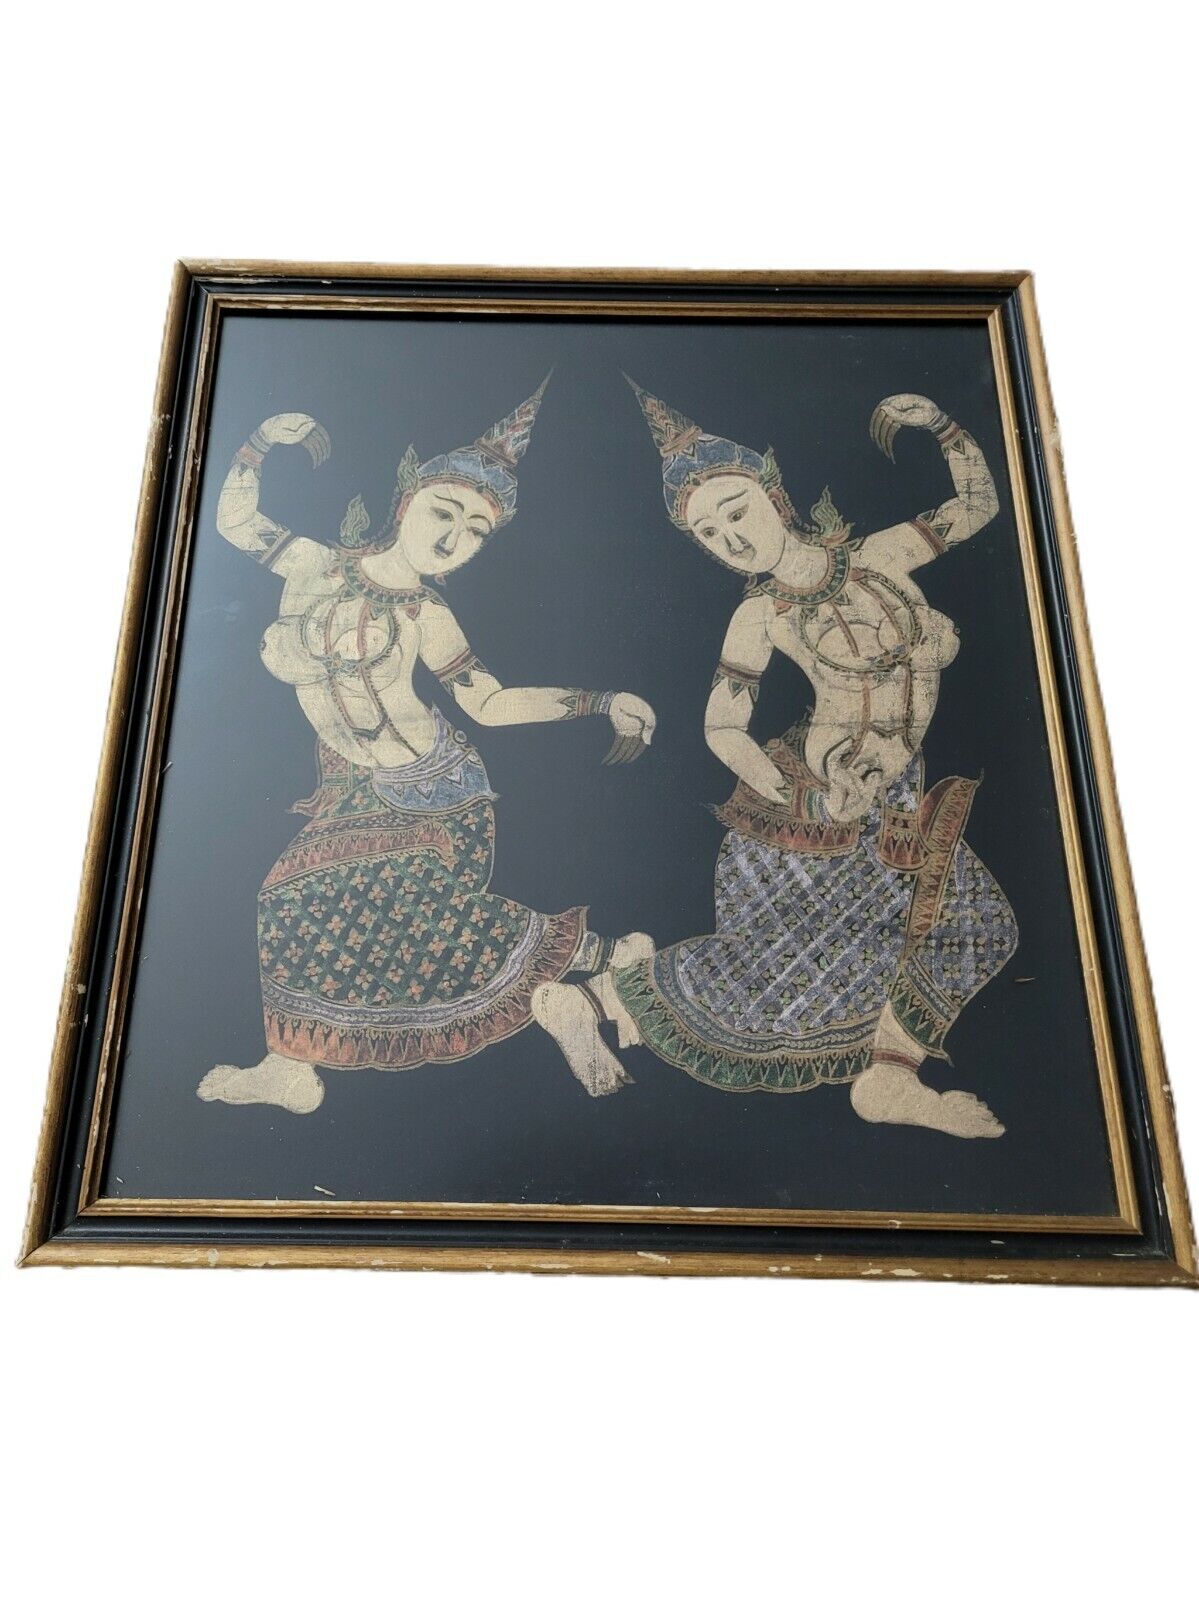 Vintage Framed Black Gold Hindu Asian Dancing goddess Artwork Print 20 x 19 in